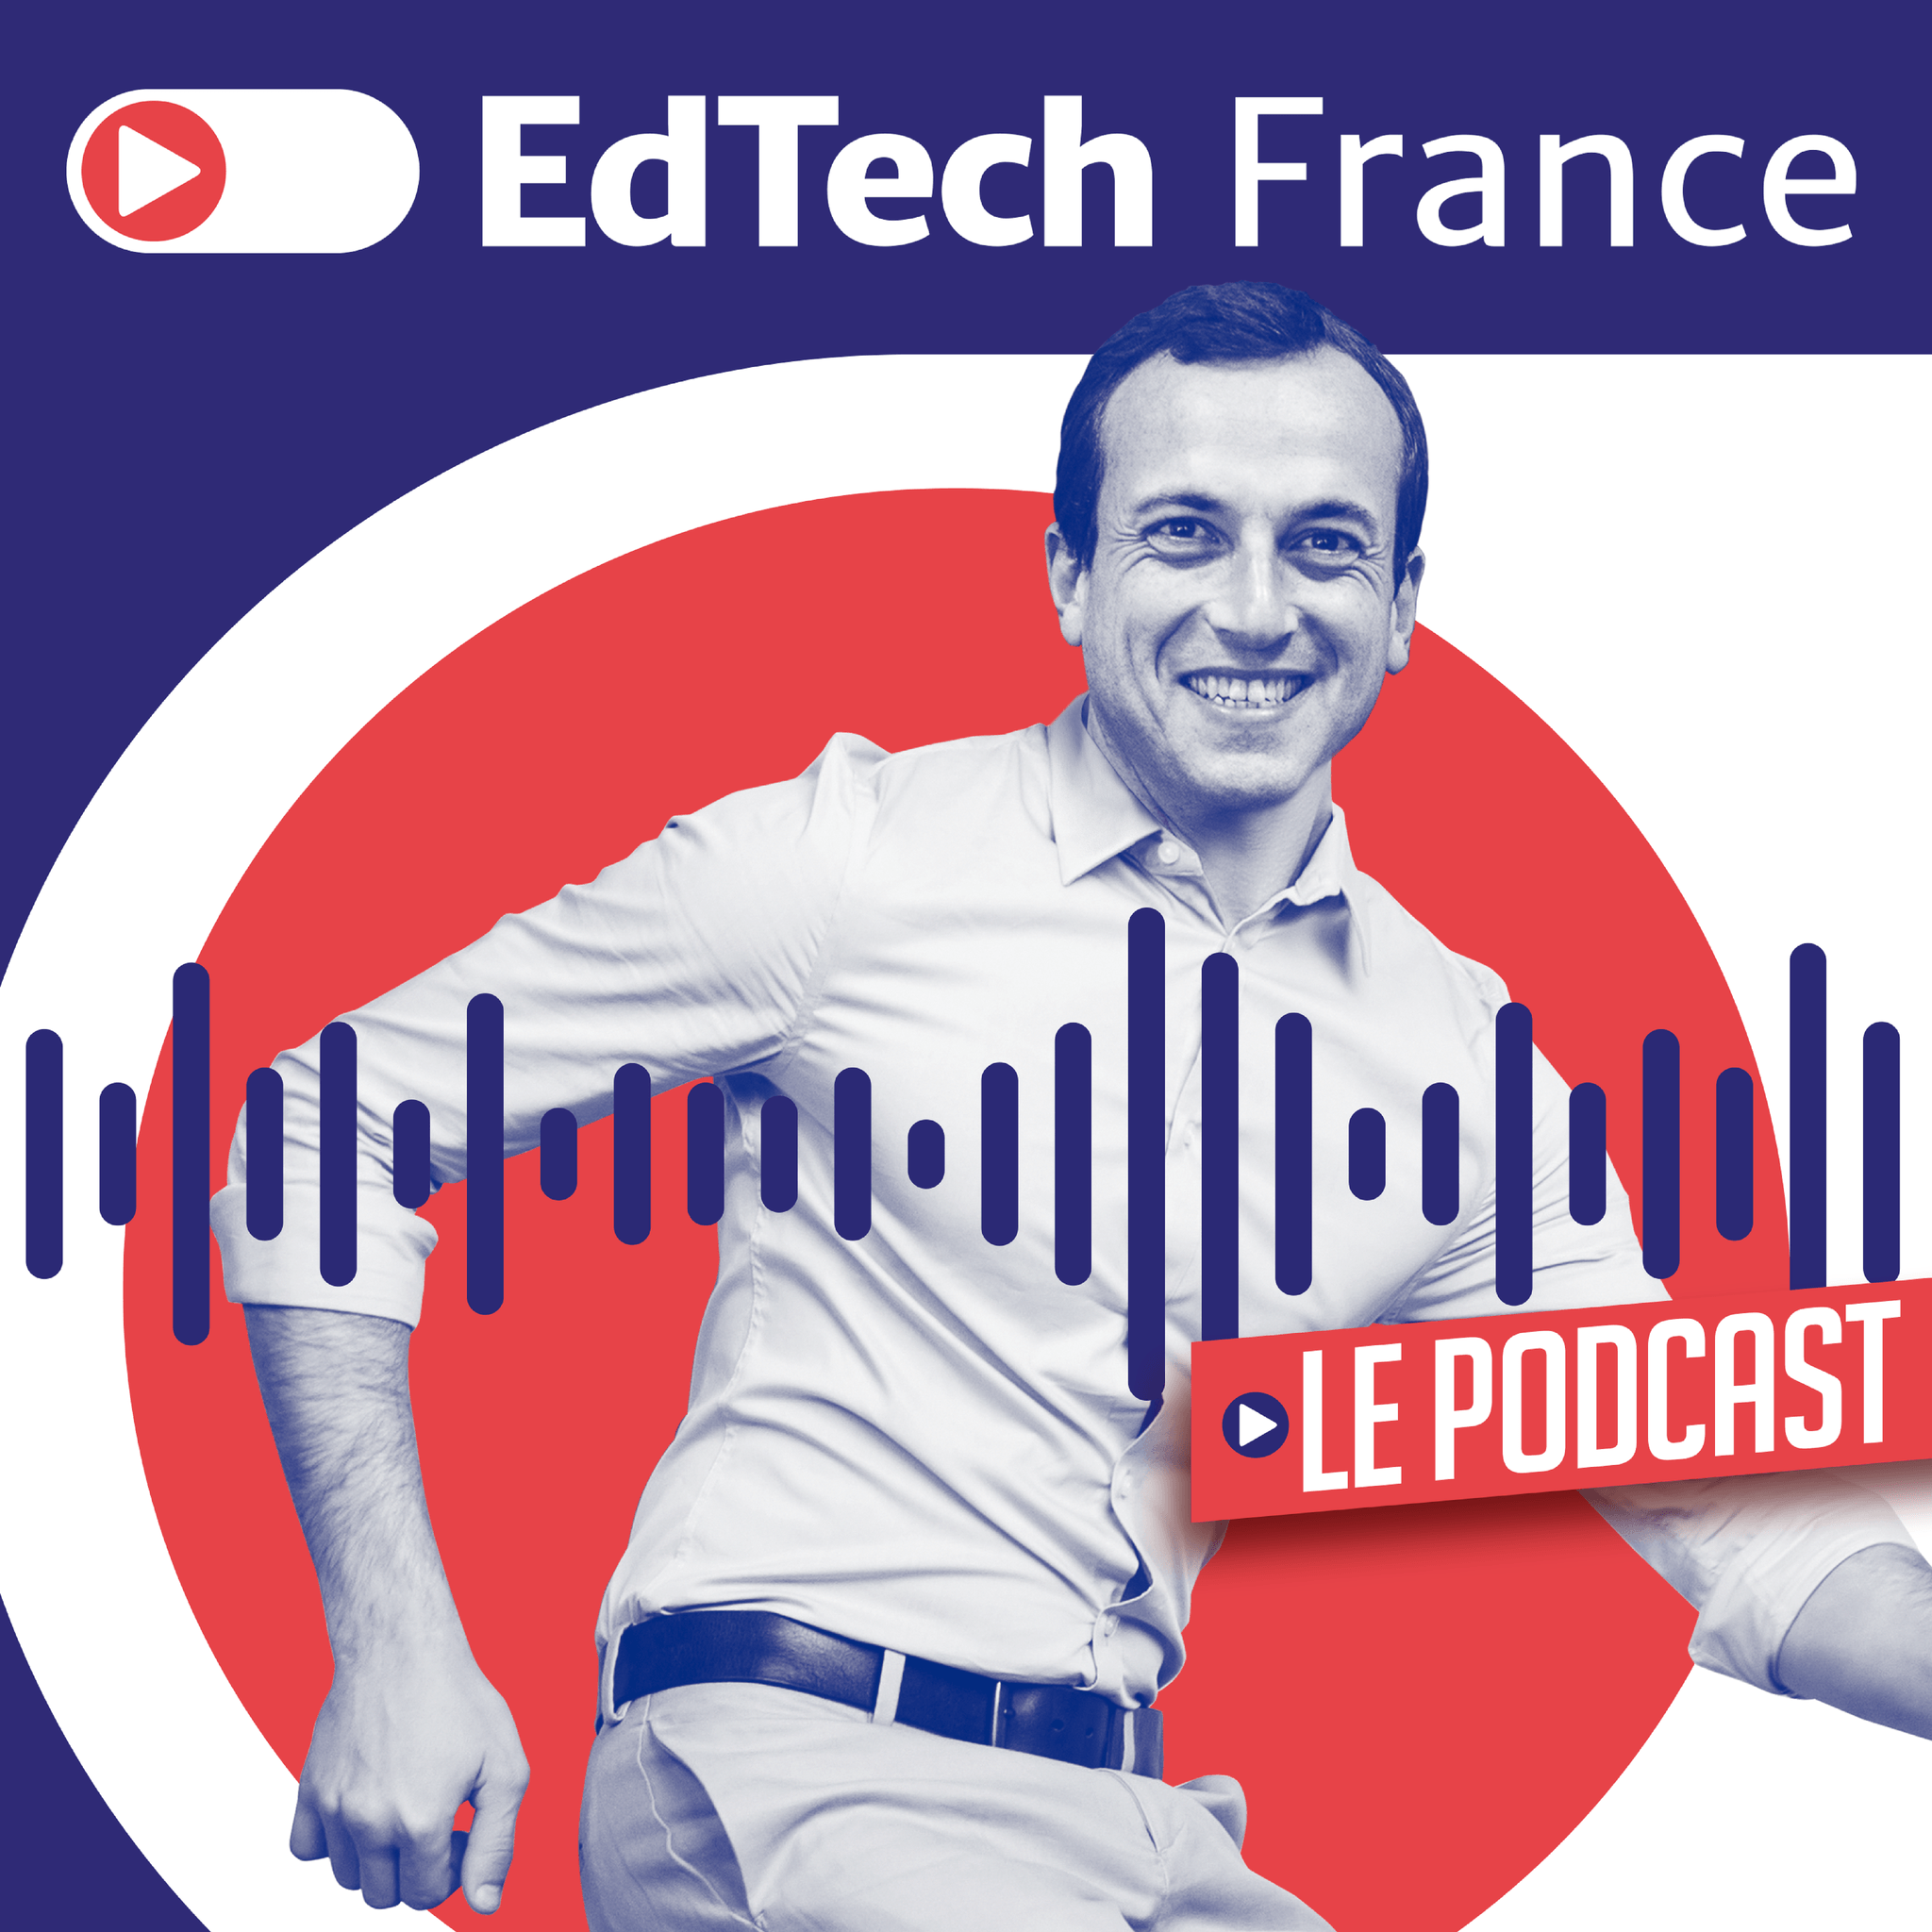 EdTech France